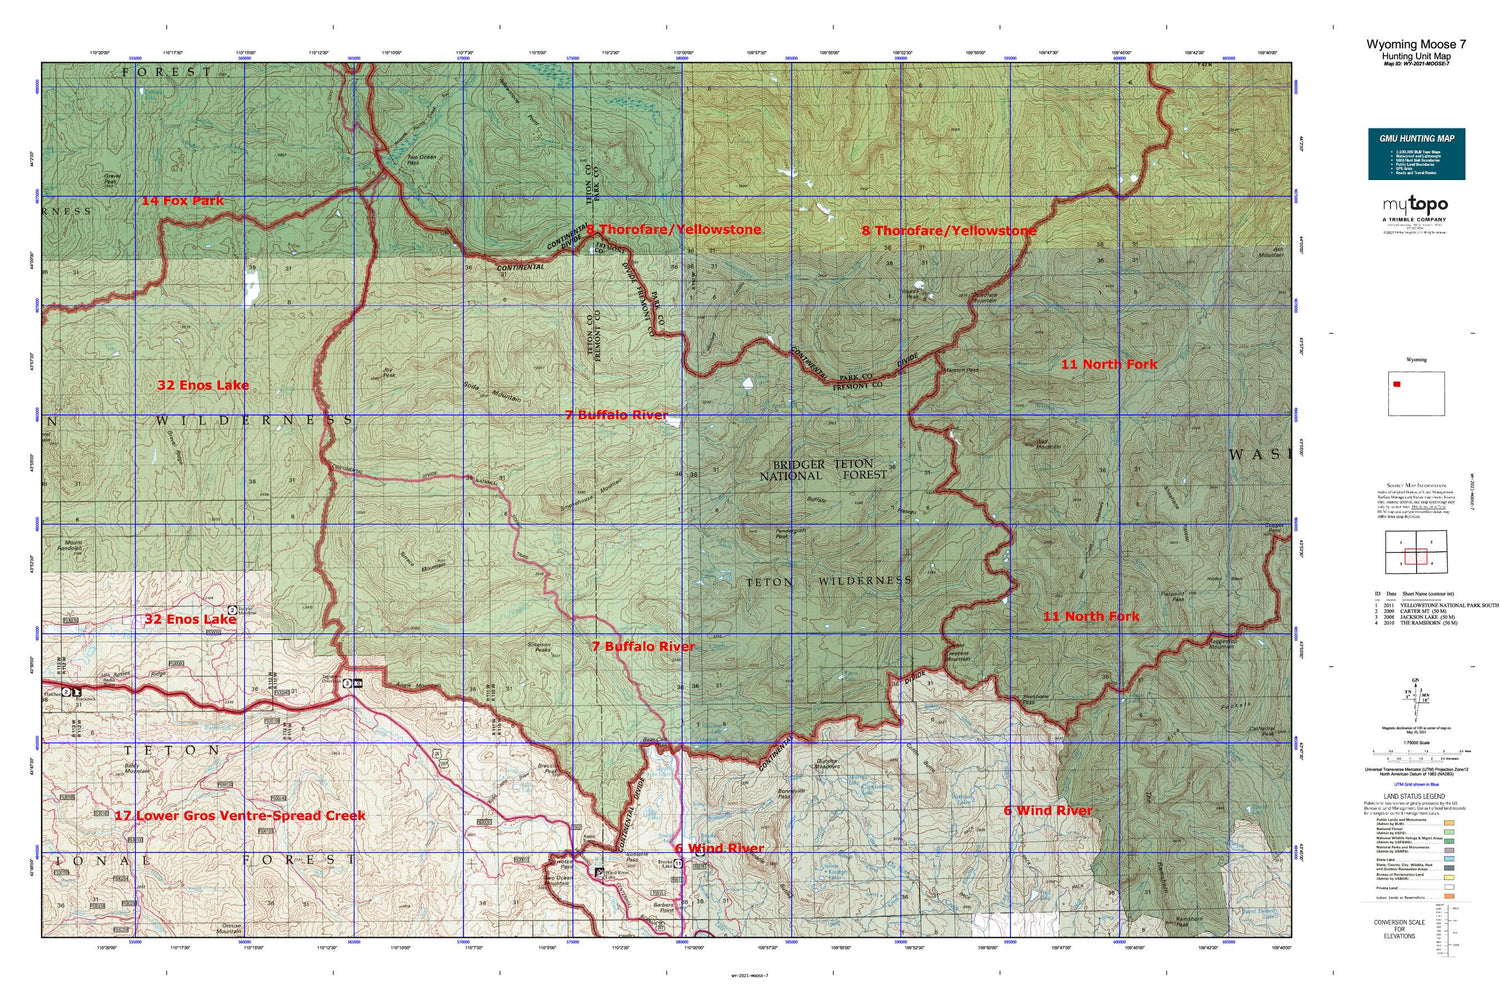 Wyoming Moose 7 Map Image